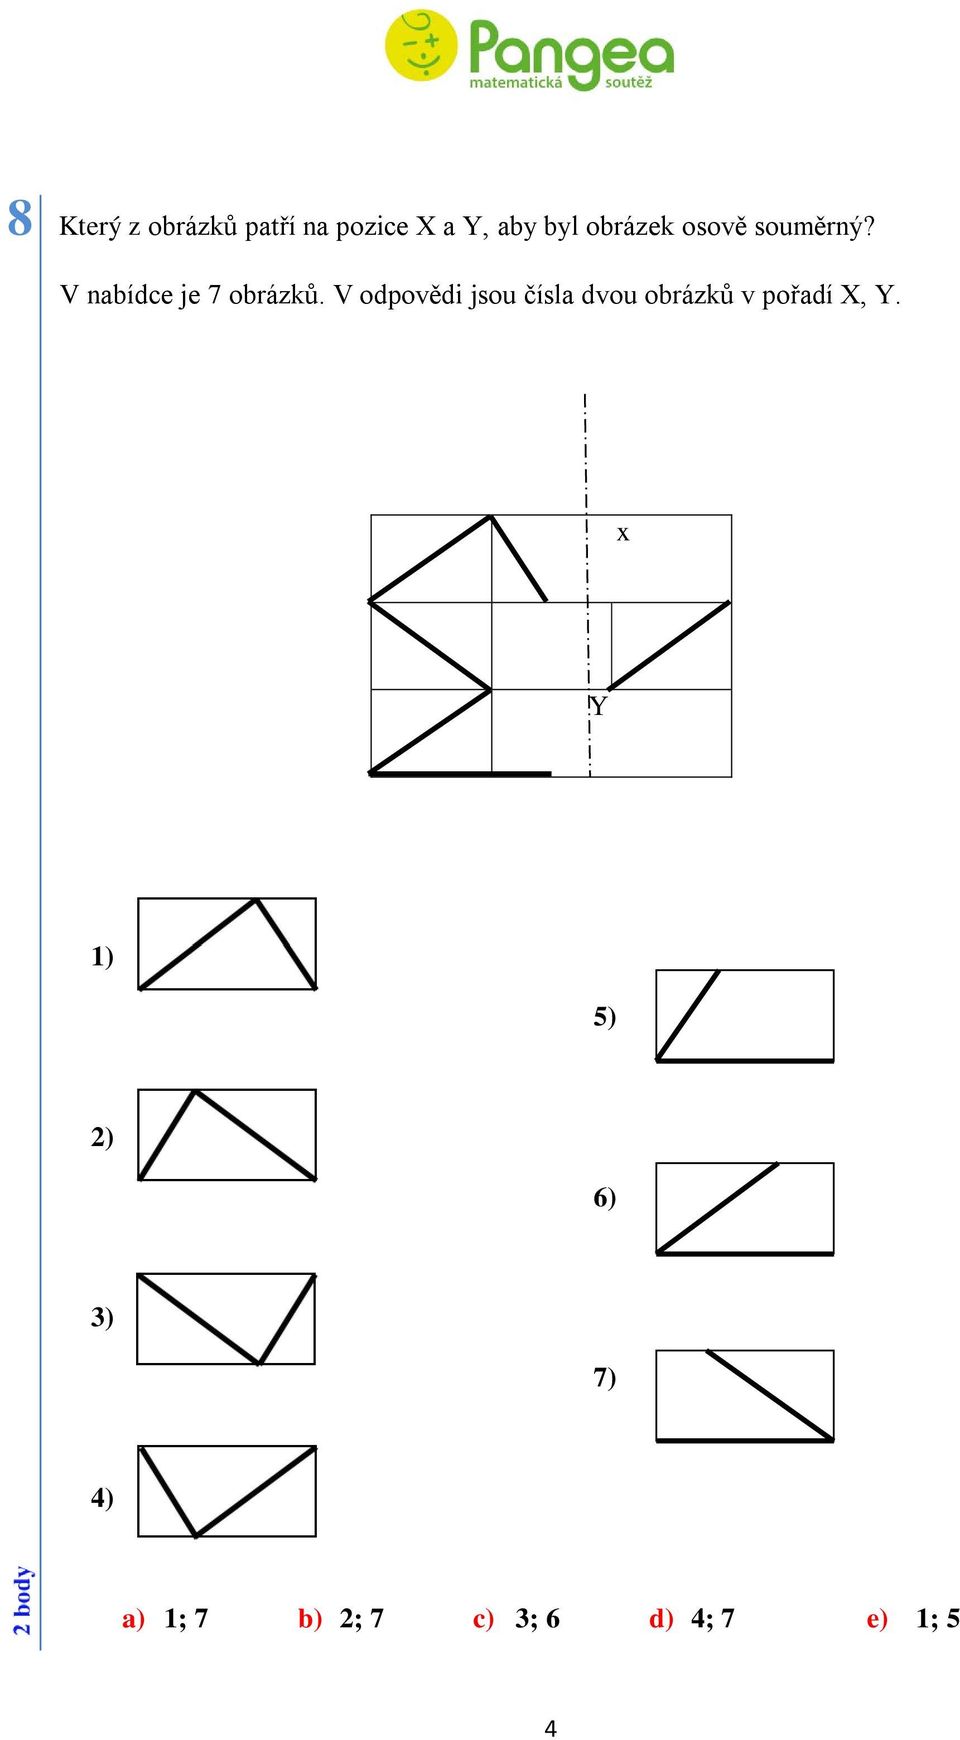 V odpovědi jsou čísla dvou obrázků v pořadí X, Y.